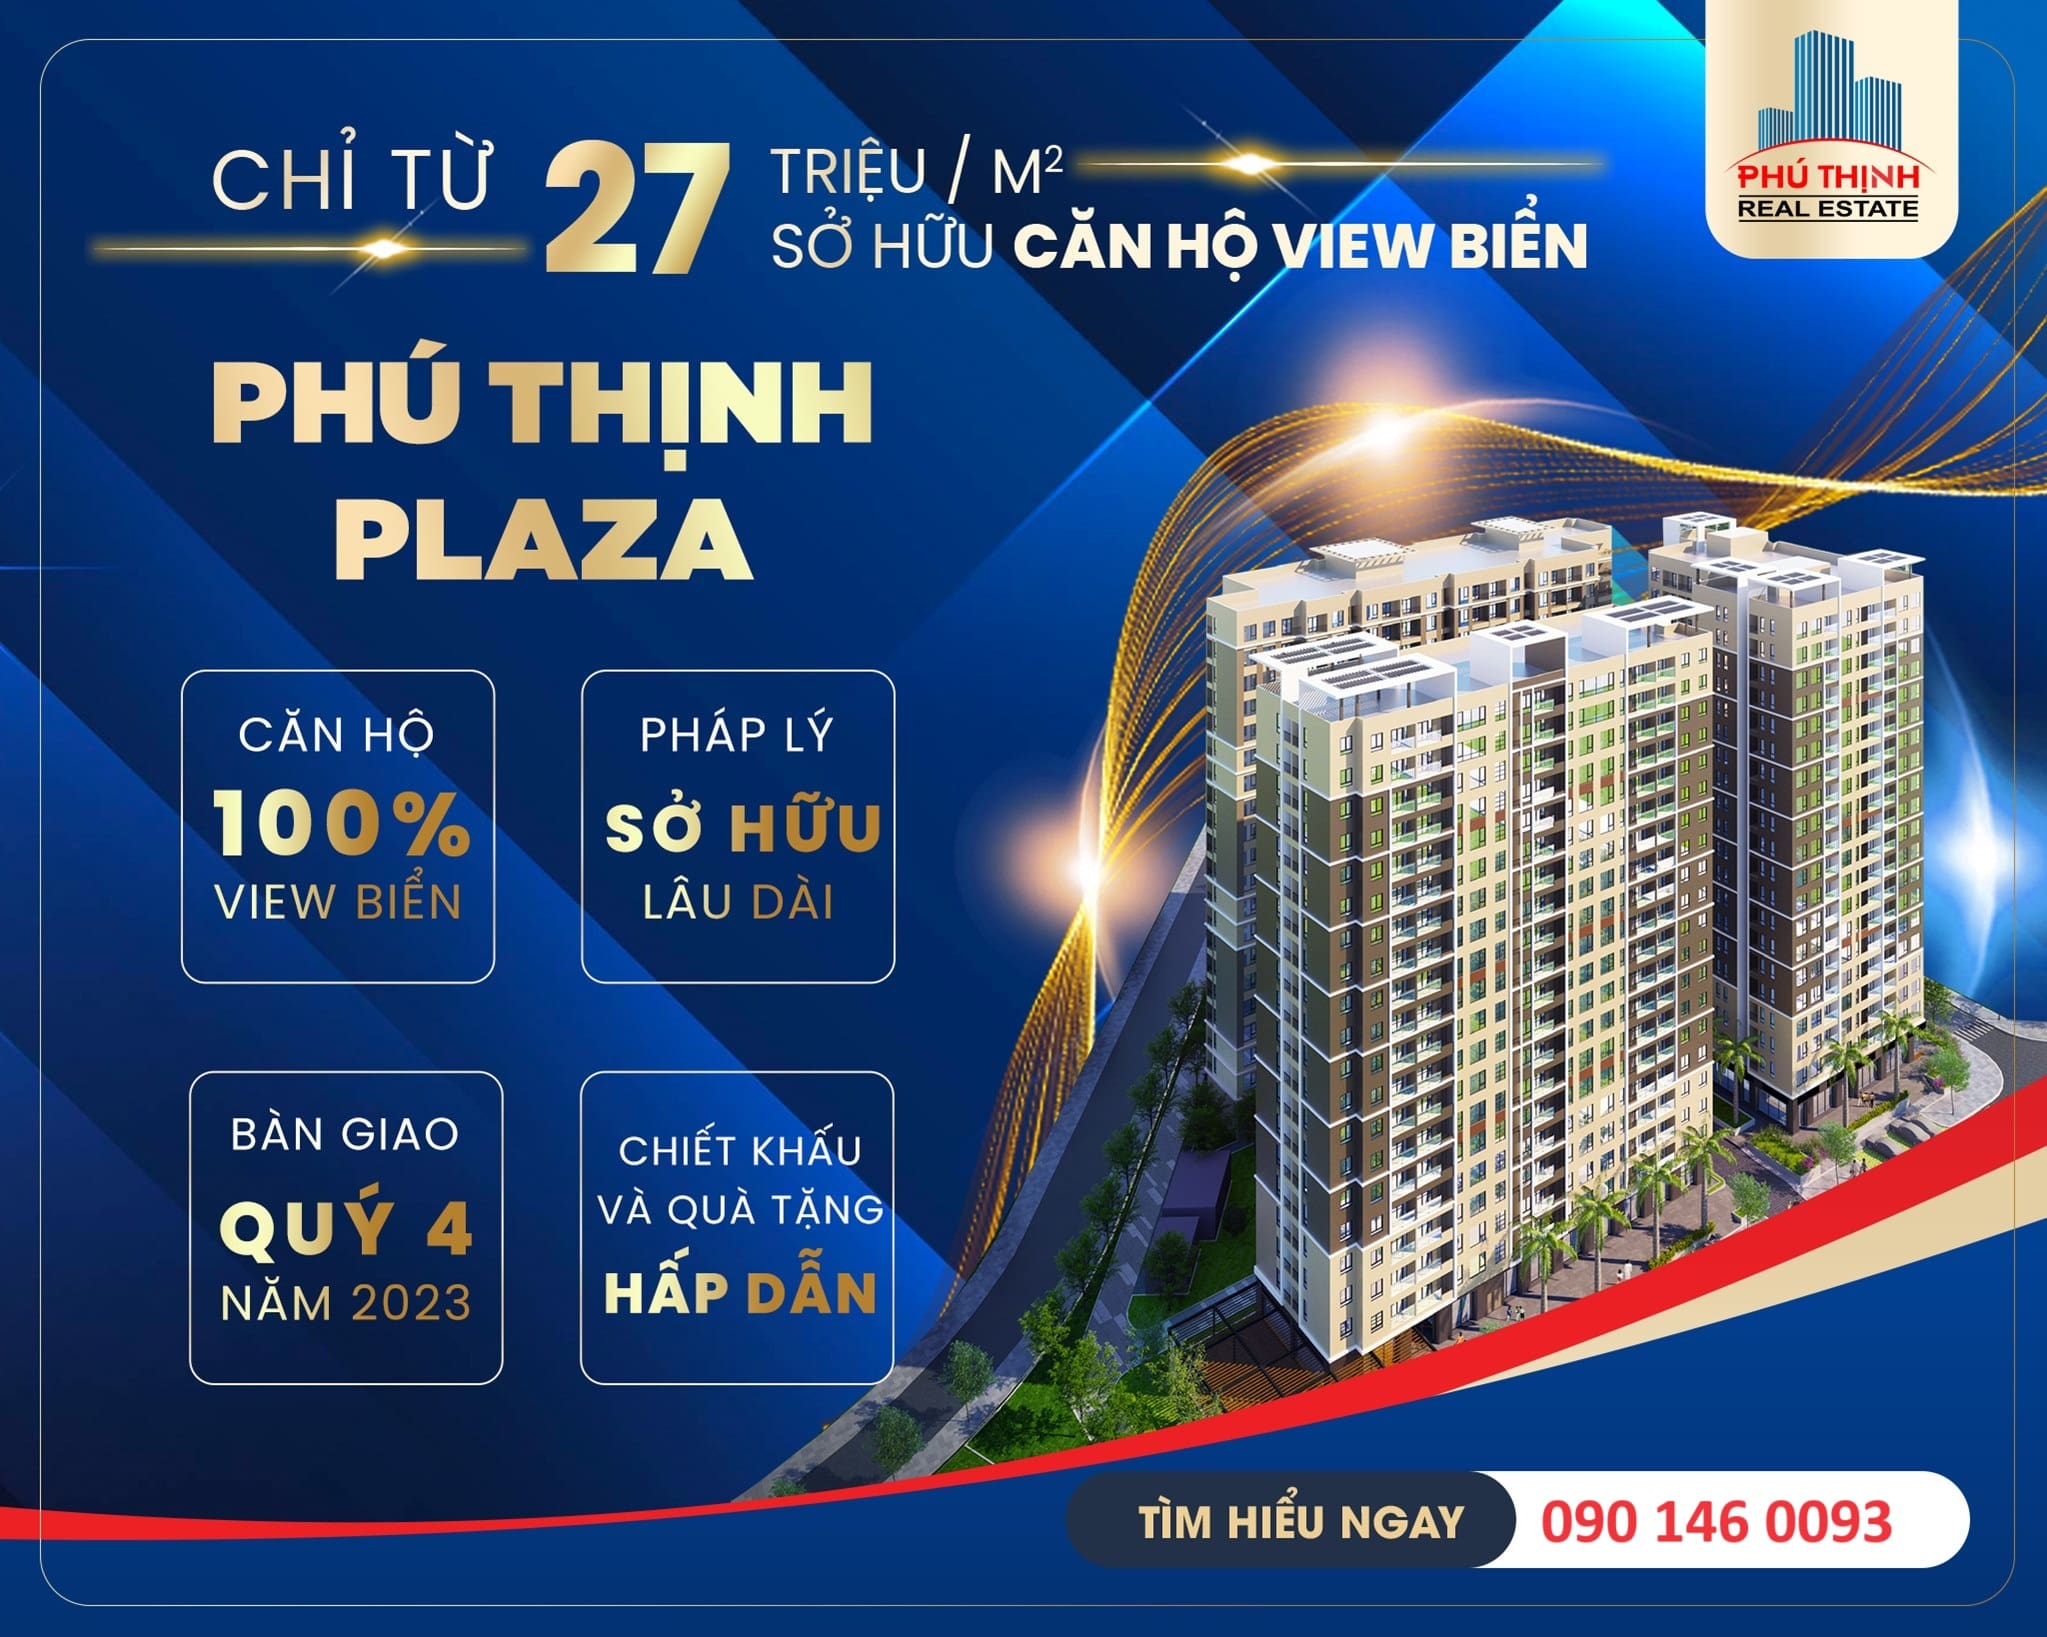 Căn Hộ Phú Thịnh Plaza Phan Thiết